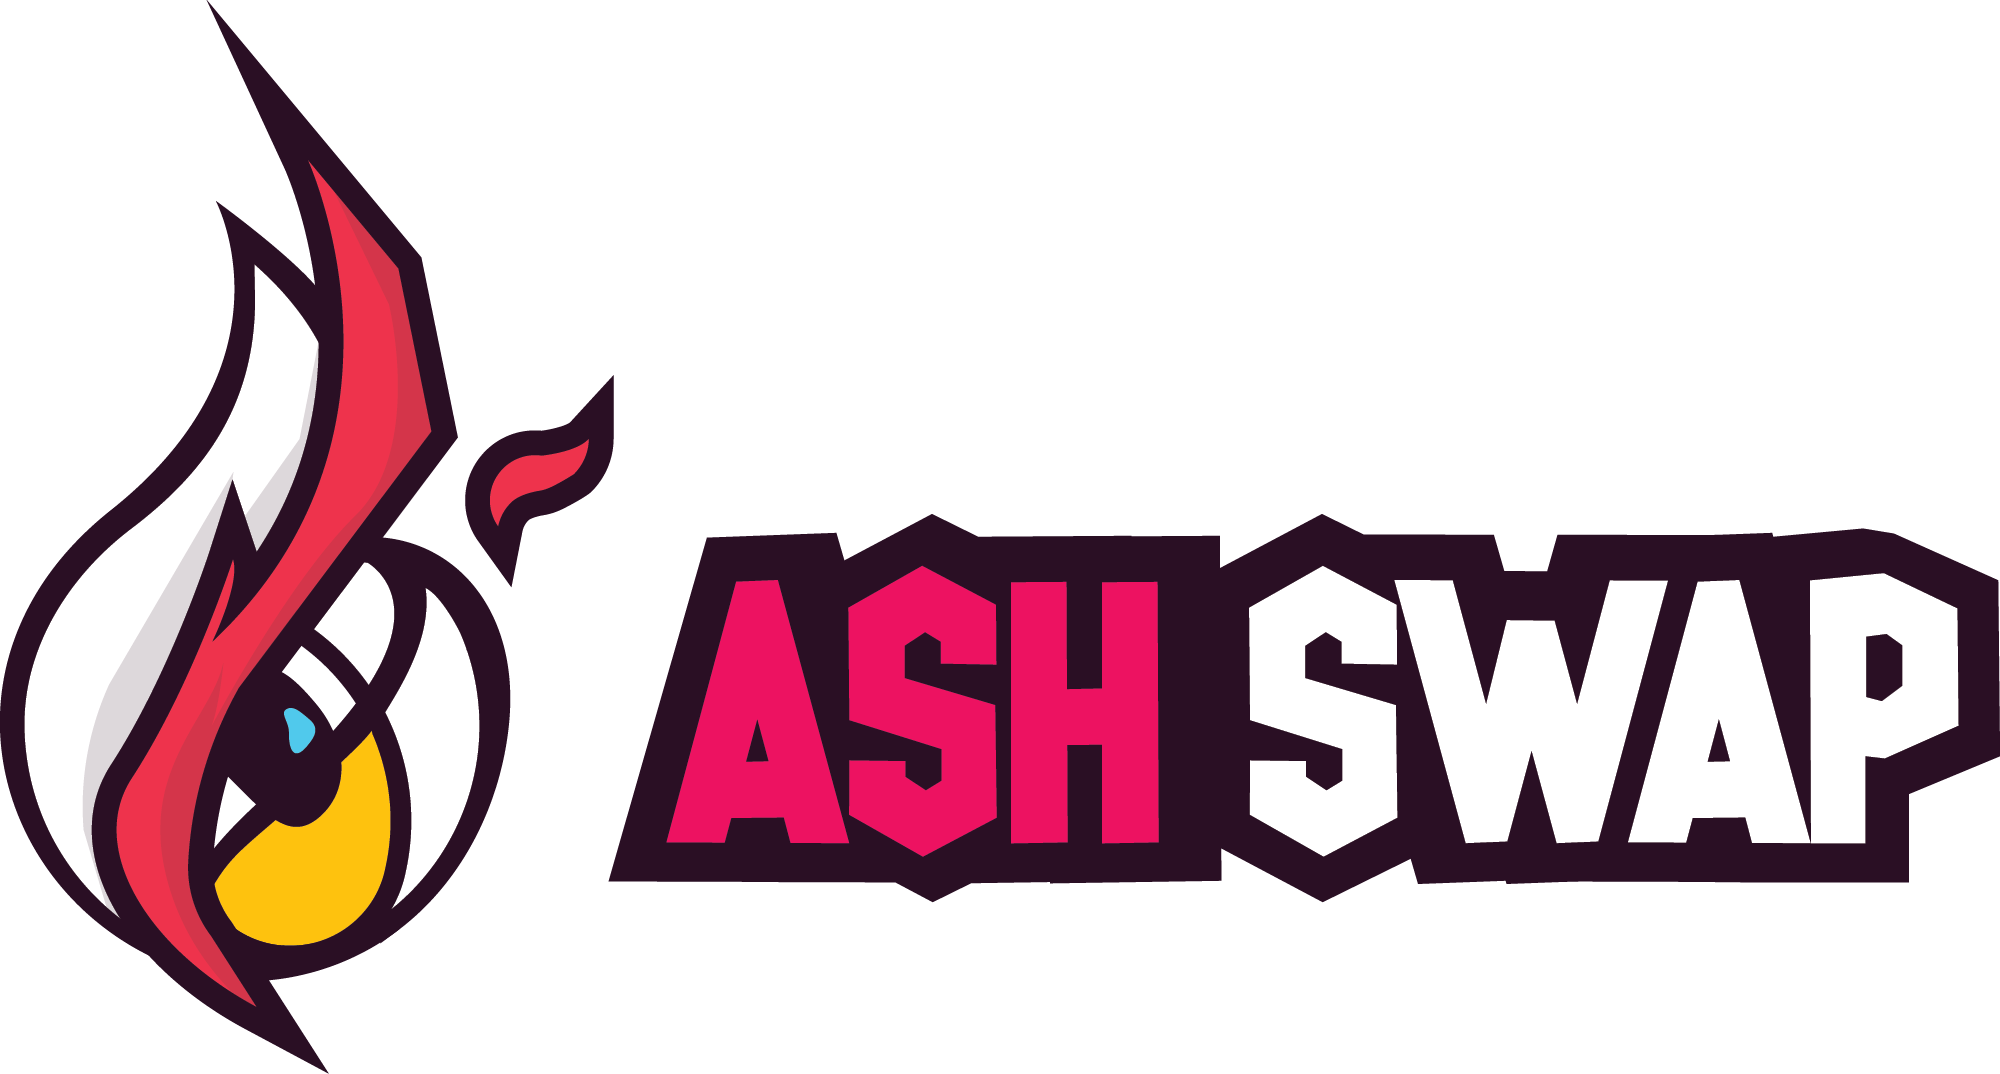 AshSwap logo